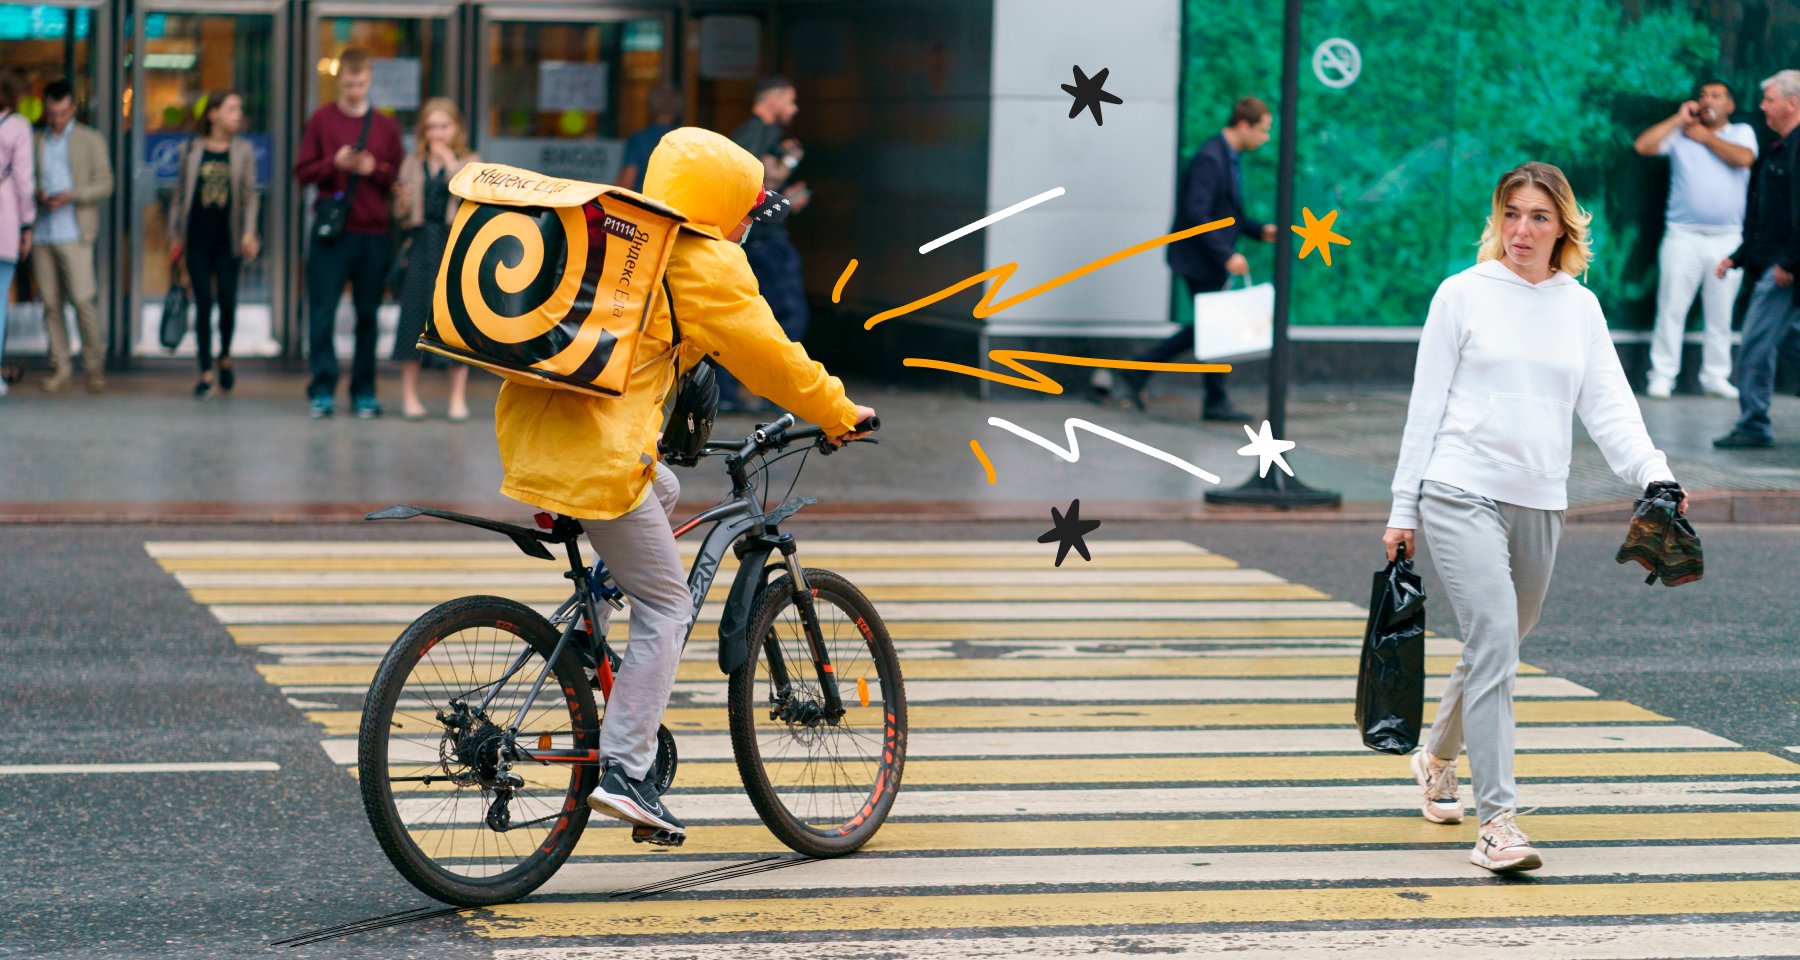 ВИДЕО: Как удобно кататься на велосипеде в юбке